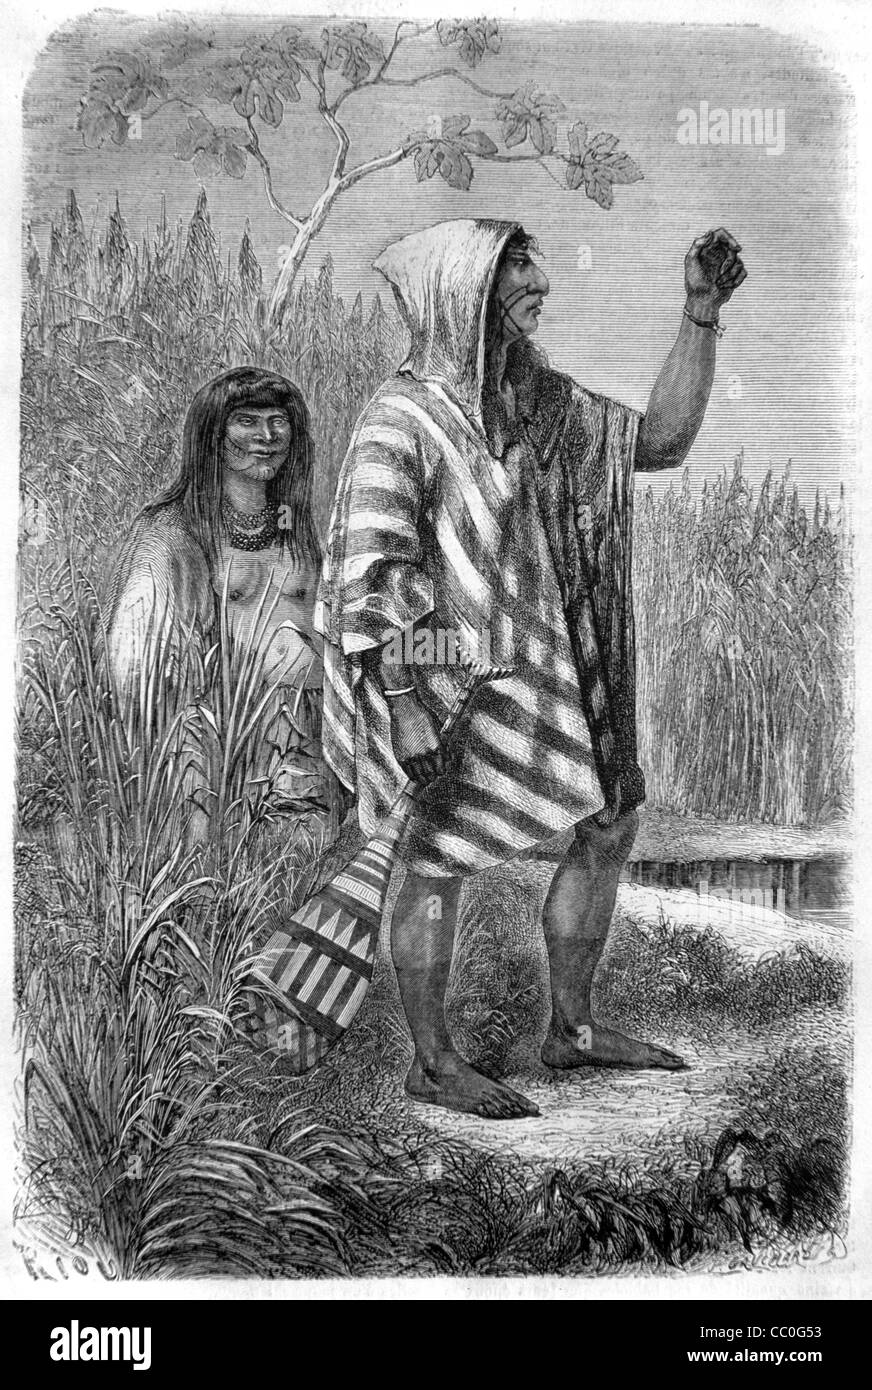 Chontaquiros, Simiranch, Yine ou Piro Amérindiens ou Indiens amérindiens de l'Amazonie péruvienne, Pérou, 1868 Engraving ou Vintage Illustration Banque D'Images